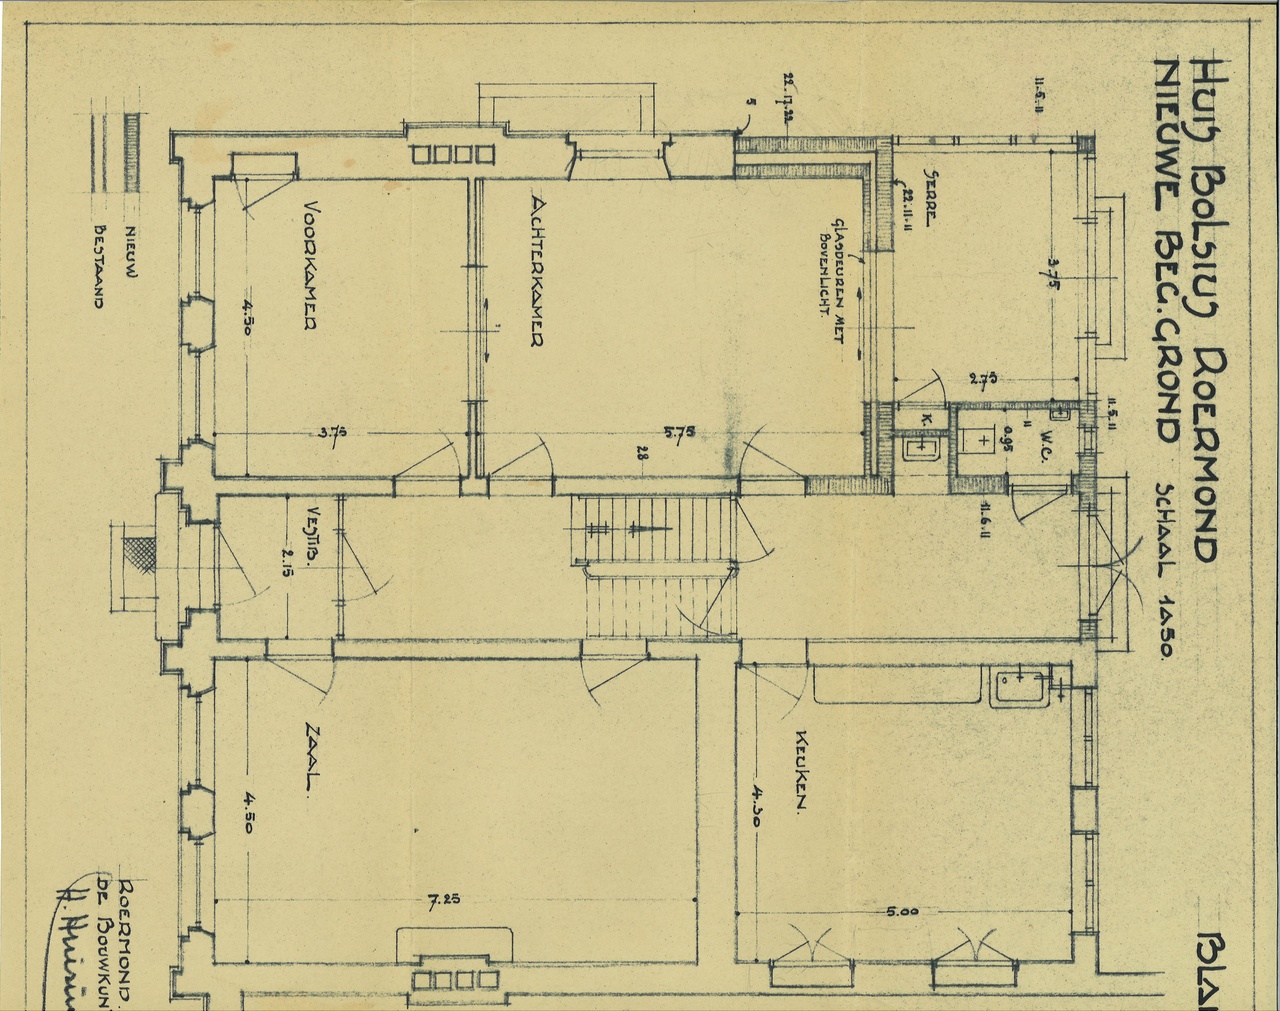 Map met tekeningen en bestek betreffende de verbouwing van het woonhuis Andersonweg 10 (voorheen Maastrichterweg 3), in opdracht van Mr. F.J. Bolsius.